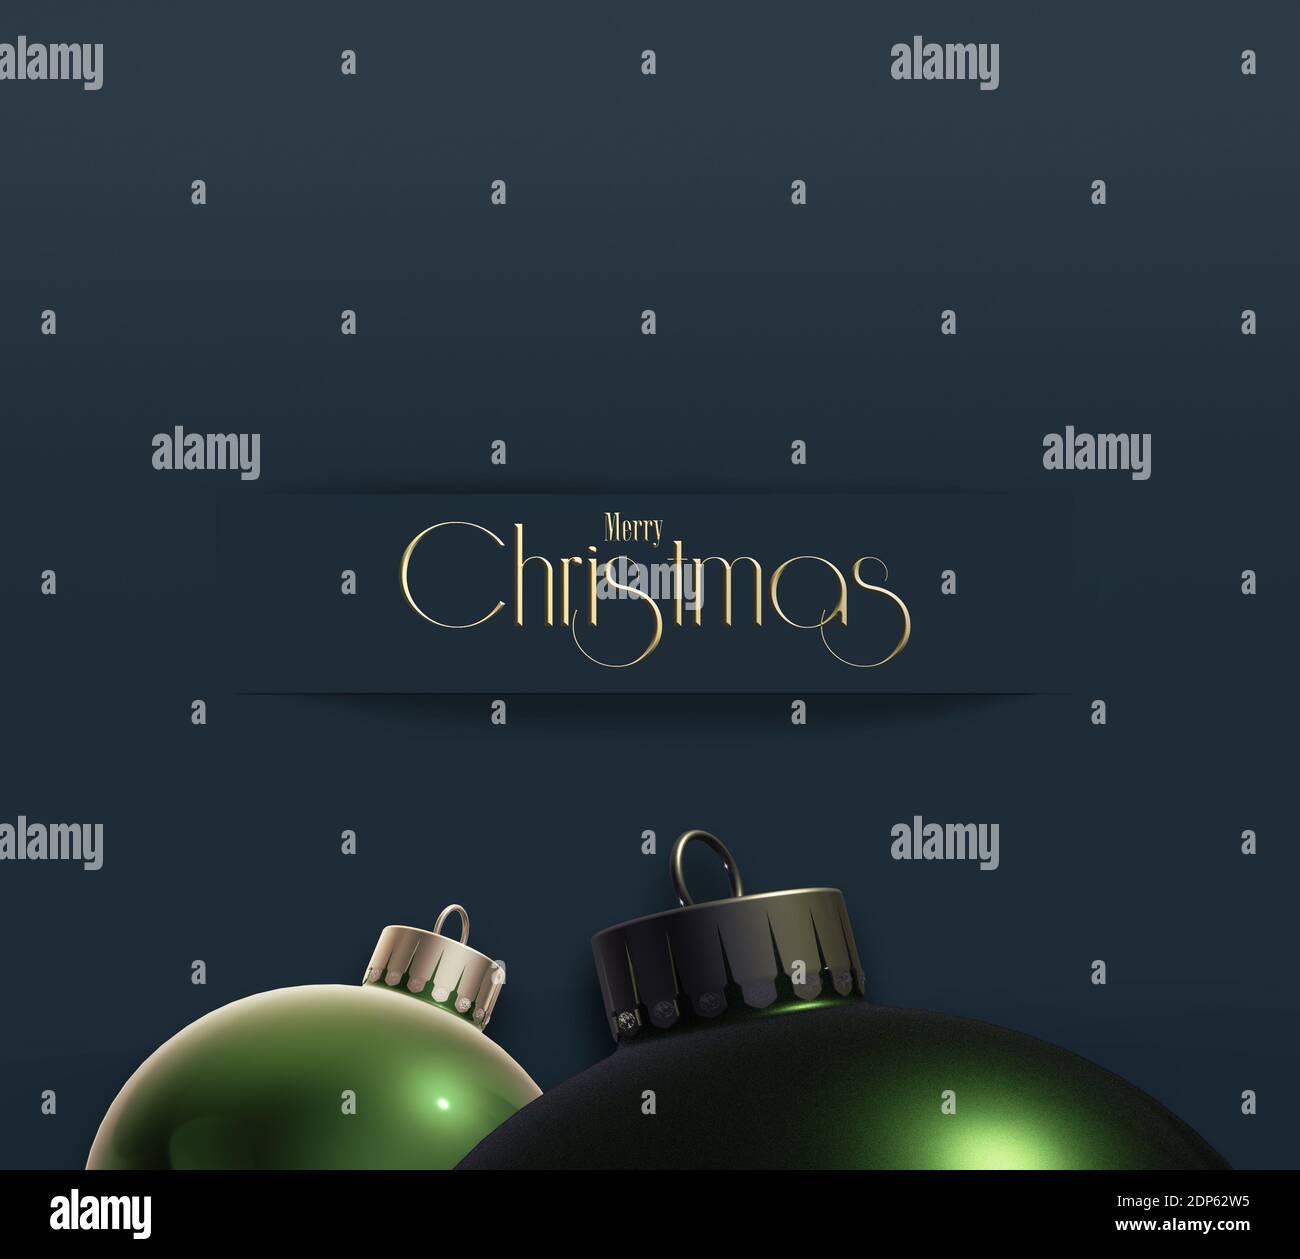 Nouvelle année minimaliste abstrait carte de visite d'entreprise avec des boules réalistes 3D, texte or Joyeux Noël bonne année sur fond noir bleu foncé Banque D'Images